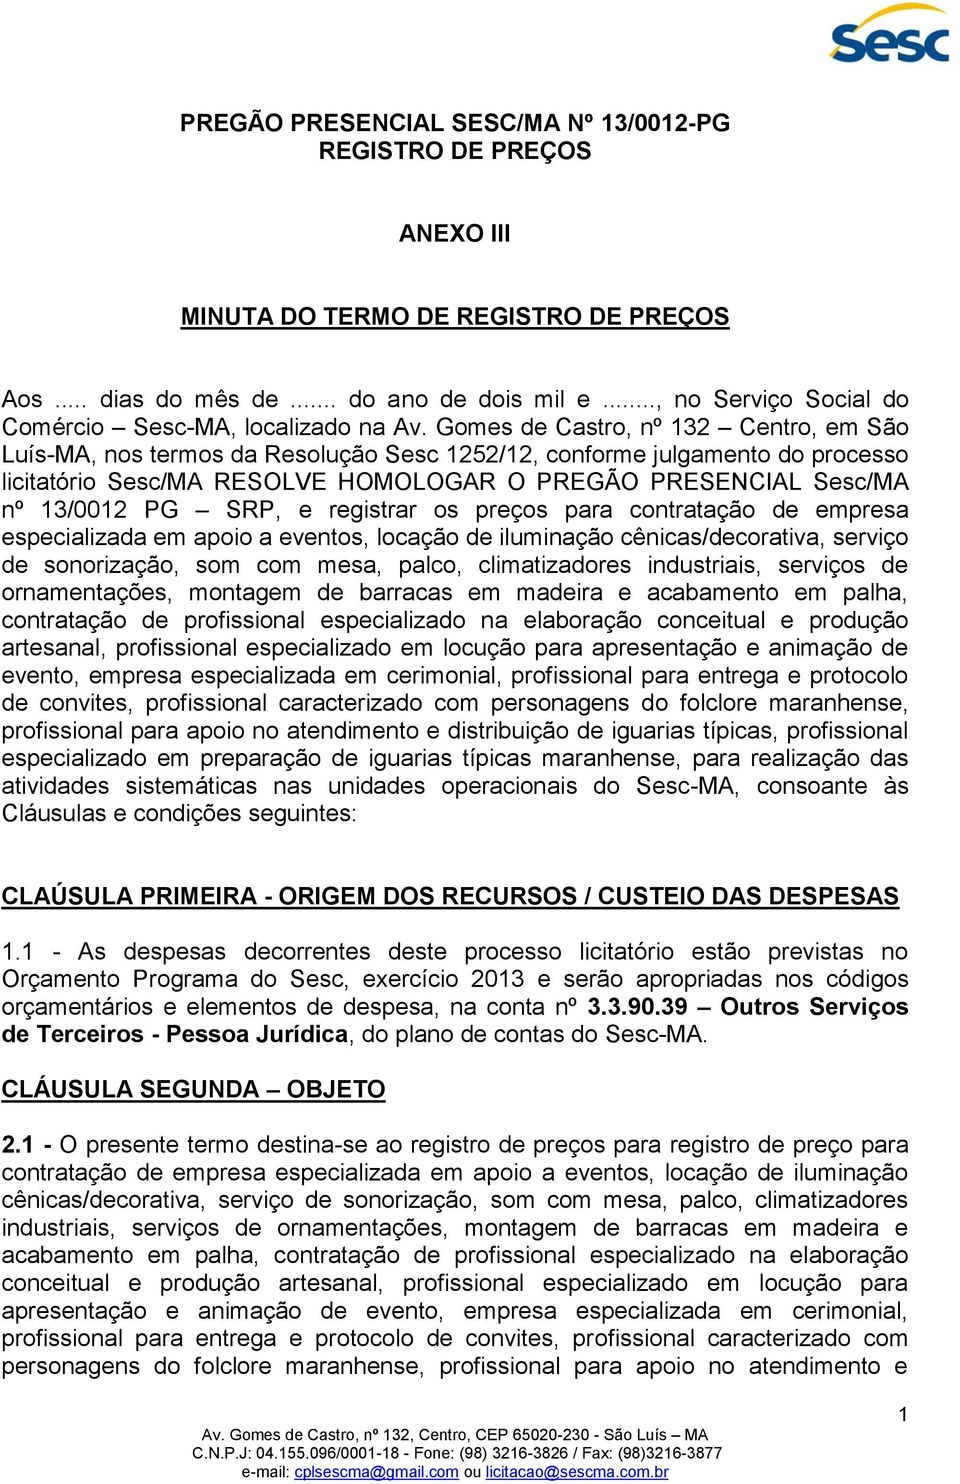 Gomes de Castro, nº 132 Centro, em São Luís-MA, nos termos da Resolução Sesc 1252/12, conforme julgamento do processo licitatório Sesc/MA RESOLVE HOMOLOGAR O PREGÃO PRESENCIAL Sesc/MA nº 13/0012 PG